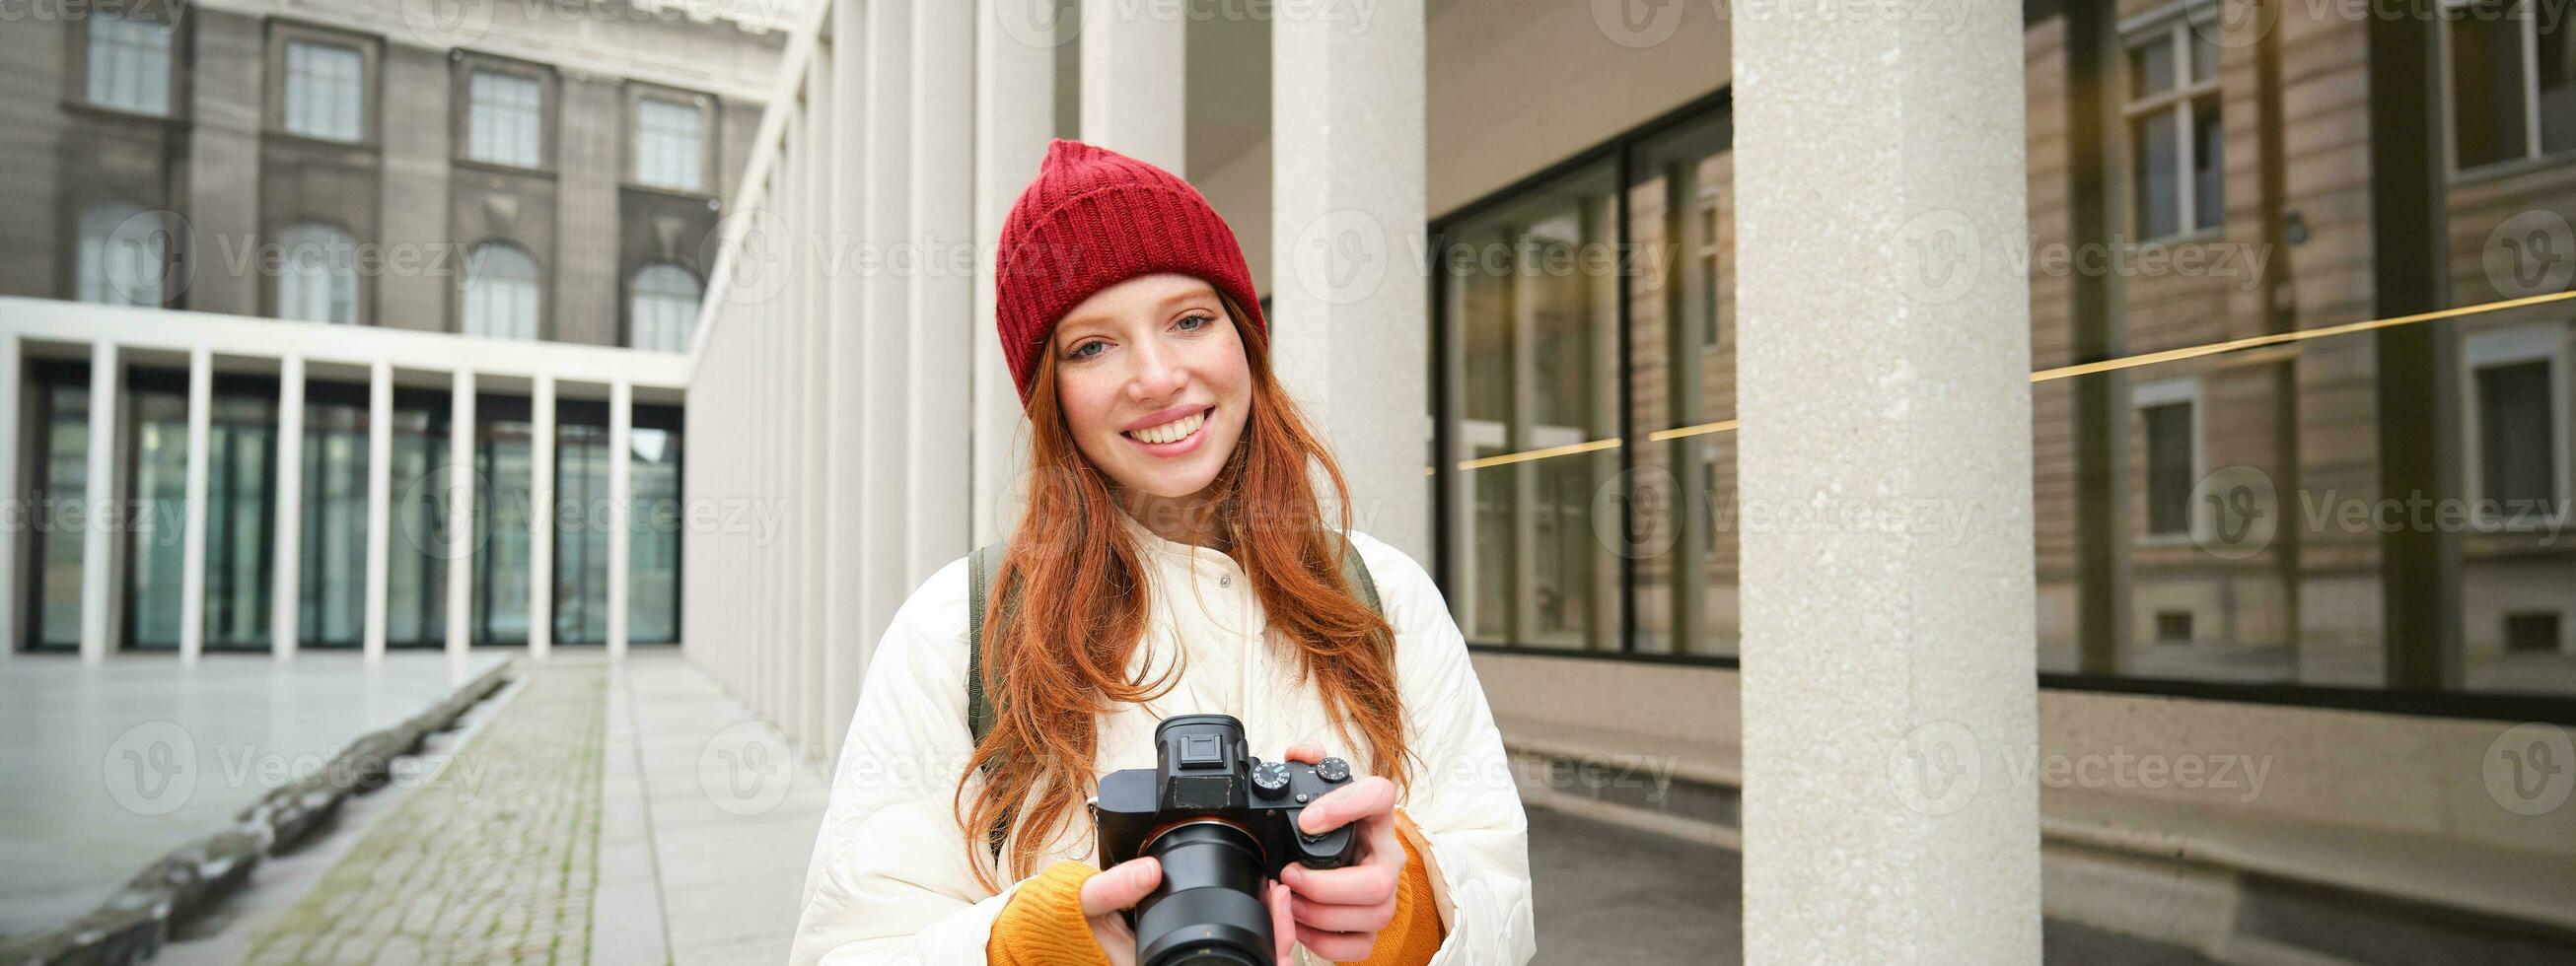 leende rödhårig flicka fotograf, tar bilder i stad, gör foton utomhus på professionell kamera